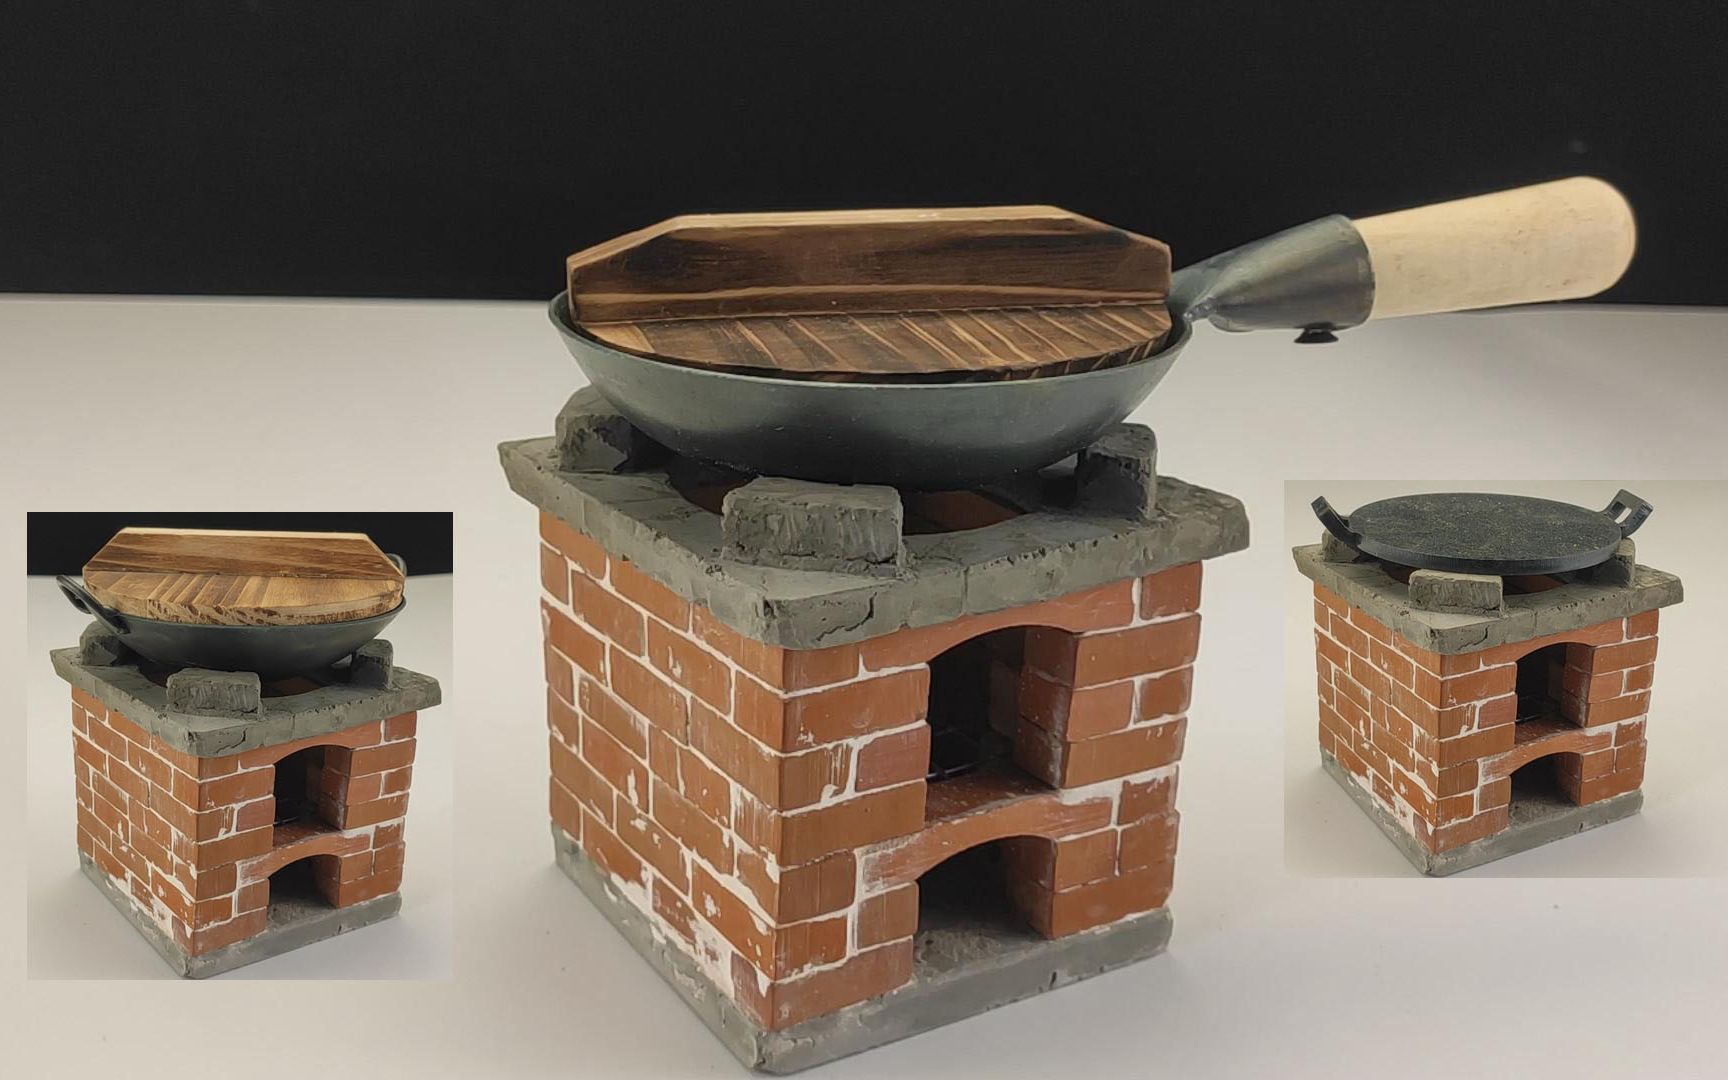 教你用迷你砖块砌个小柴火炉灶当把瓦工手工制作